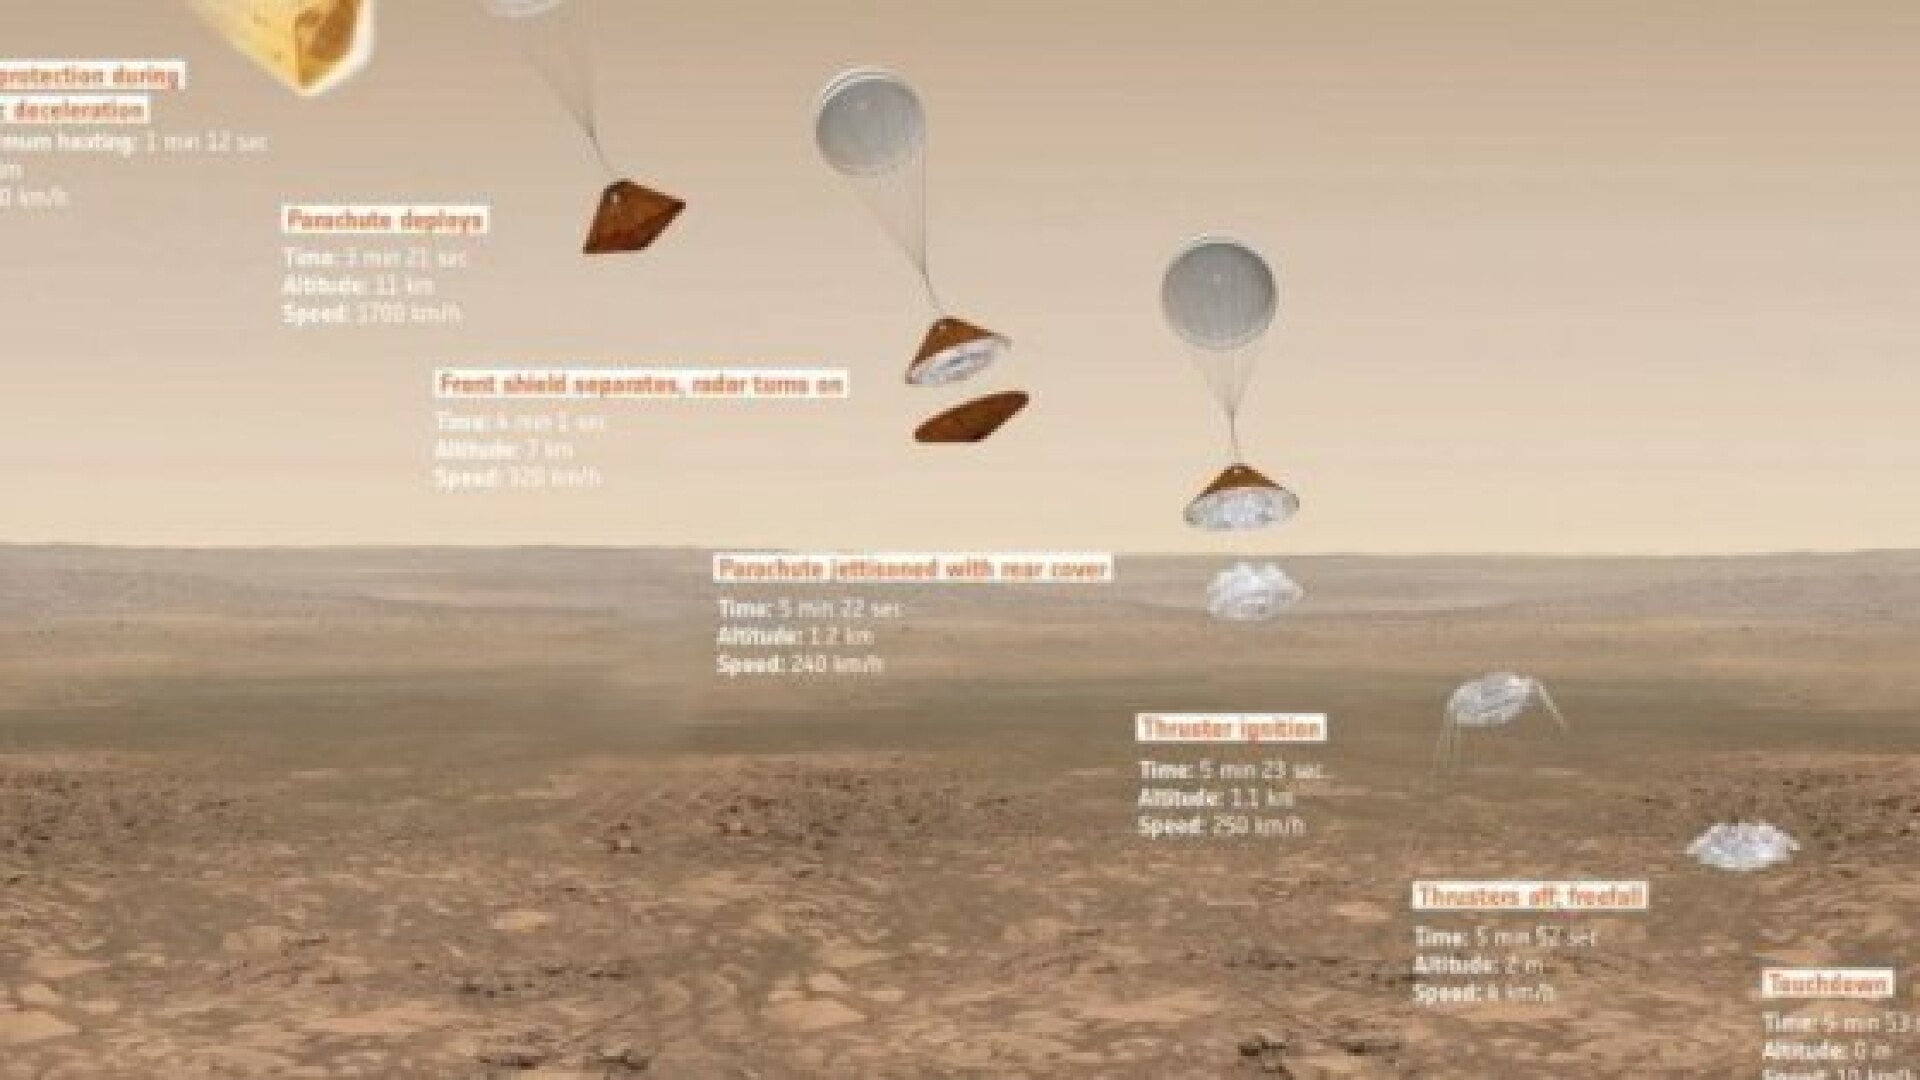 Rumeno accusato dall’Agenzia Spaziale Italiana di essere responsabile dello schianto di un modulo su Marte